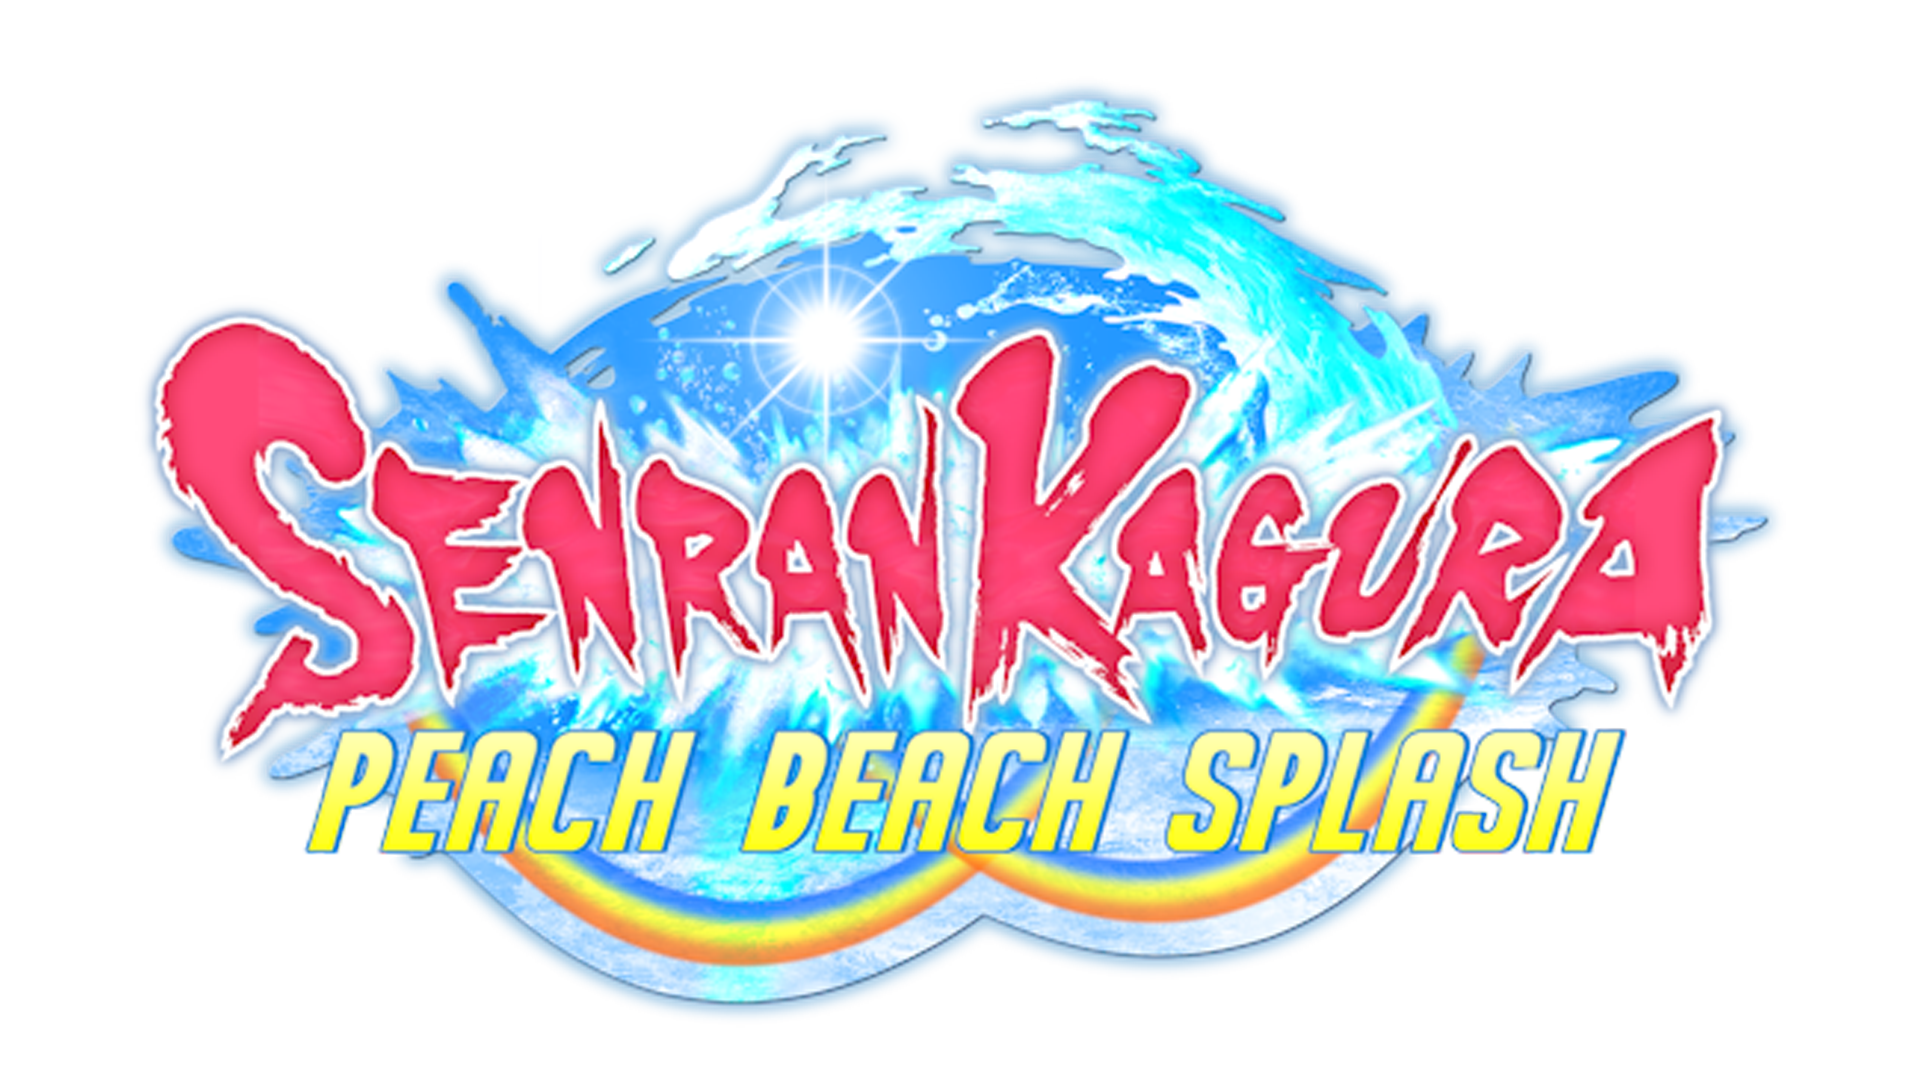 Senran Kagura: Peach Beach Splash Logo